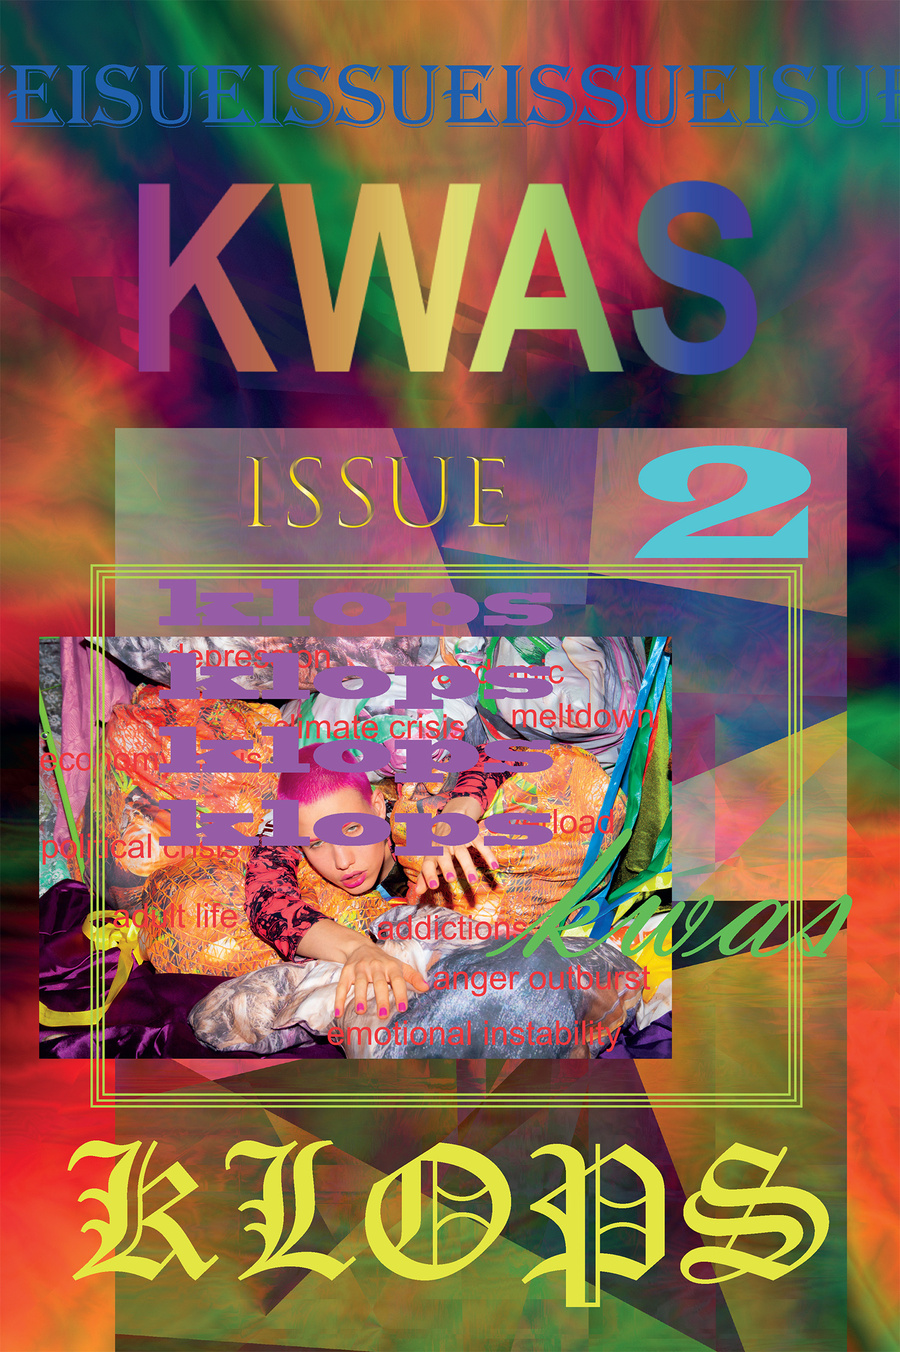 Issue 2: KLOPS KWAS Magazine